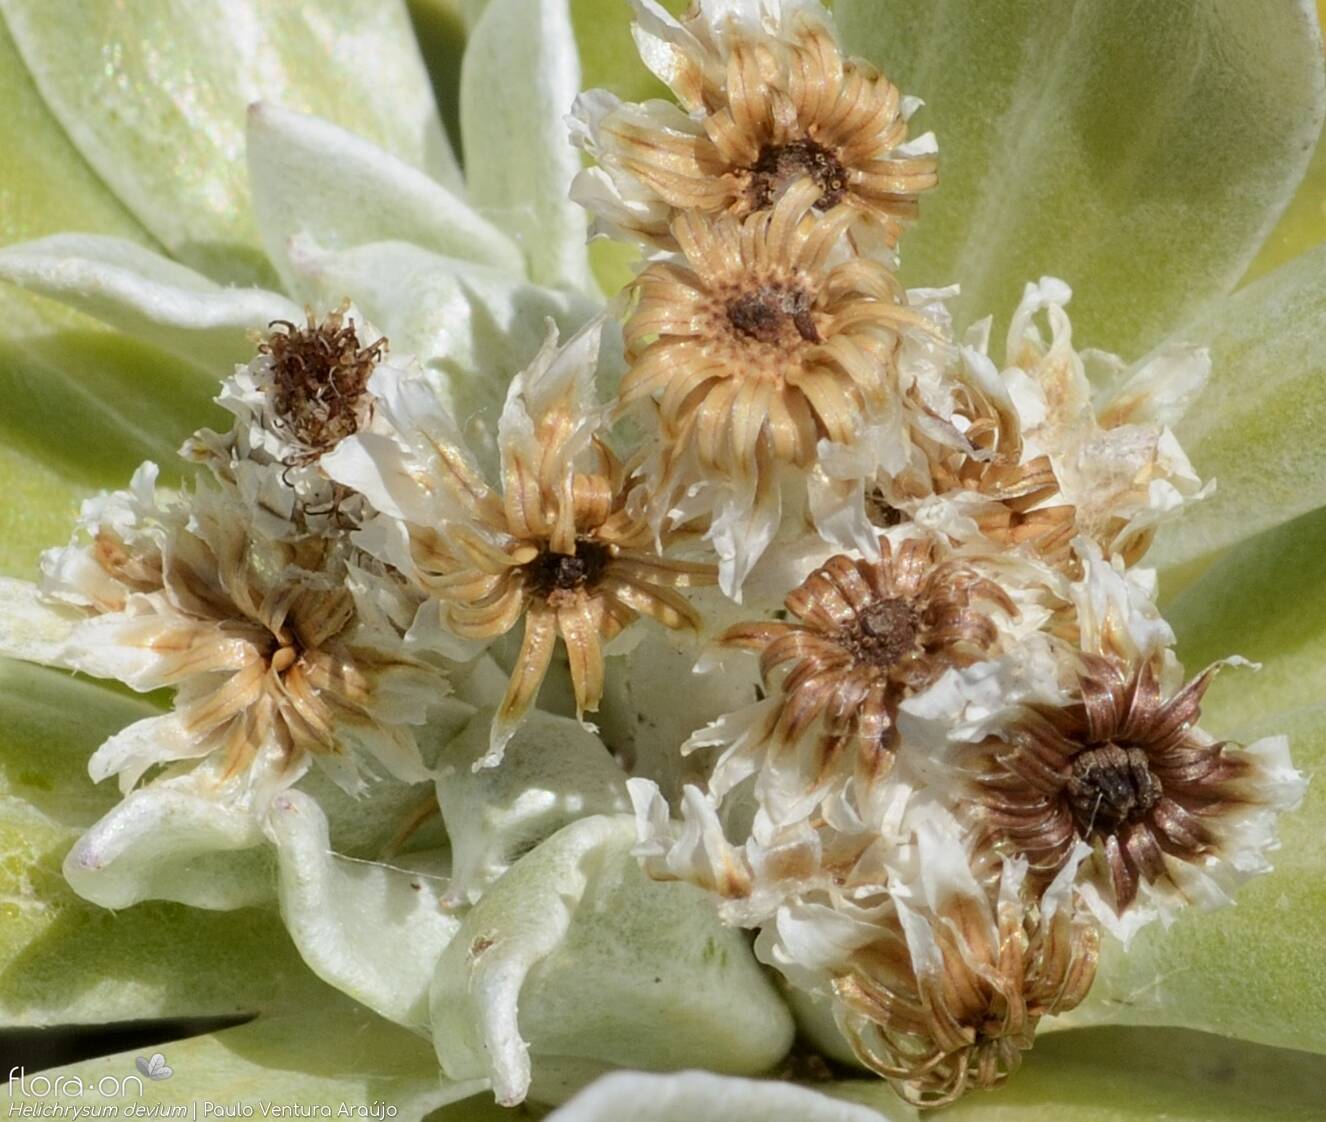 Helichrysum devium - Capítulo frutífero | Paulo Ventura Araújo; CC BY-NC 4.0